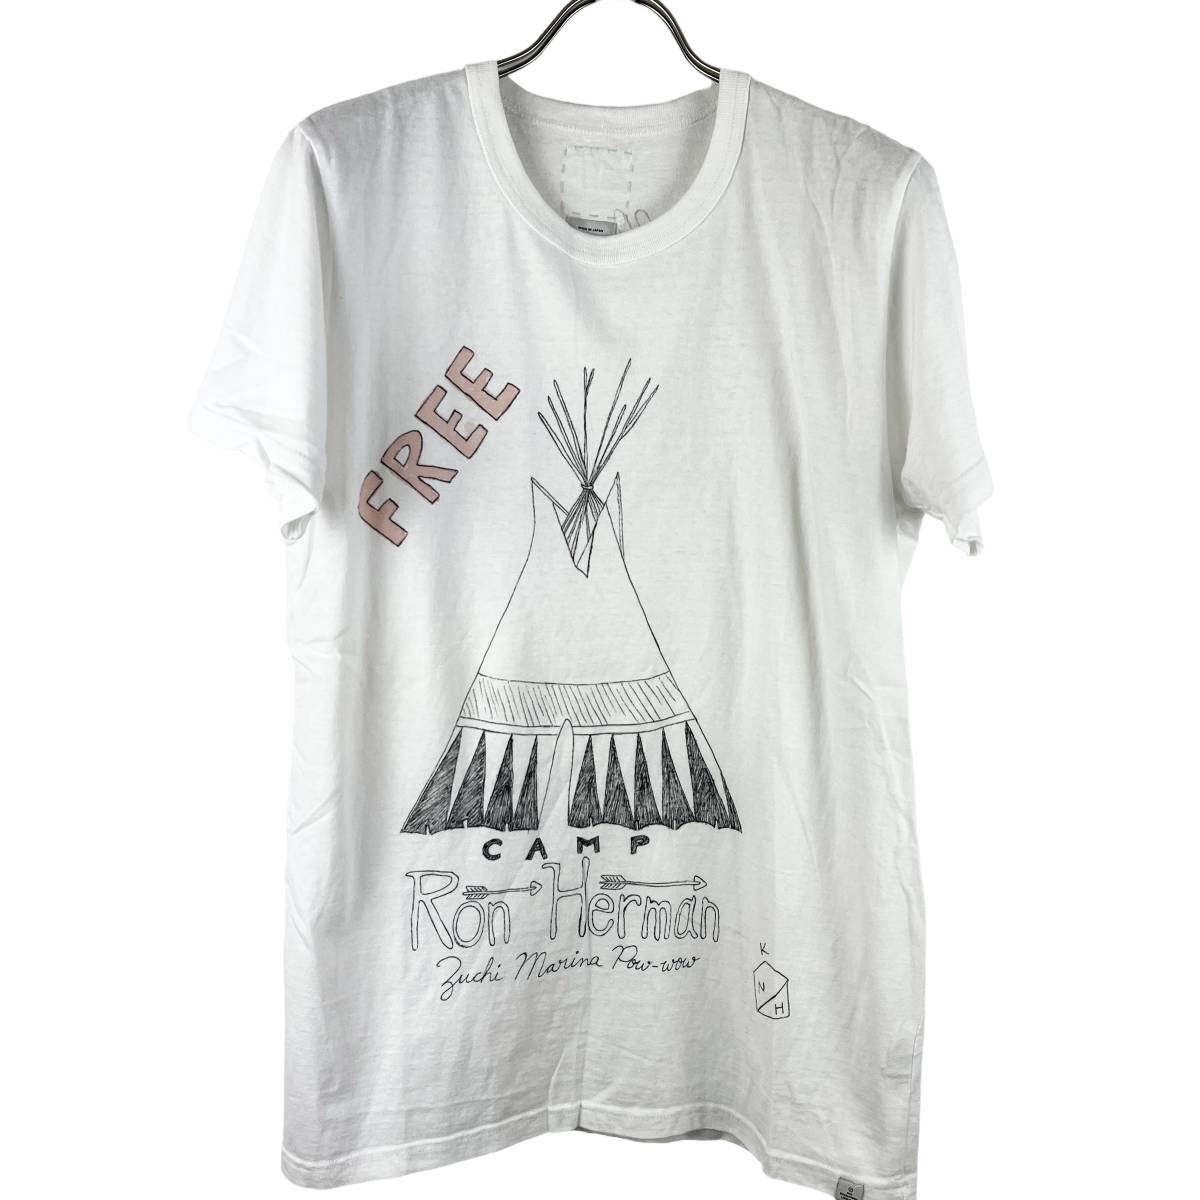 VISVIM(ビズビム) Ronherman Camp T Shirt (white)